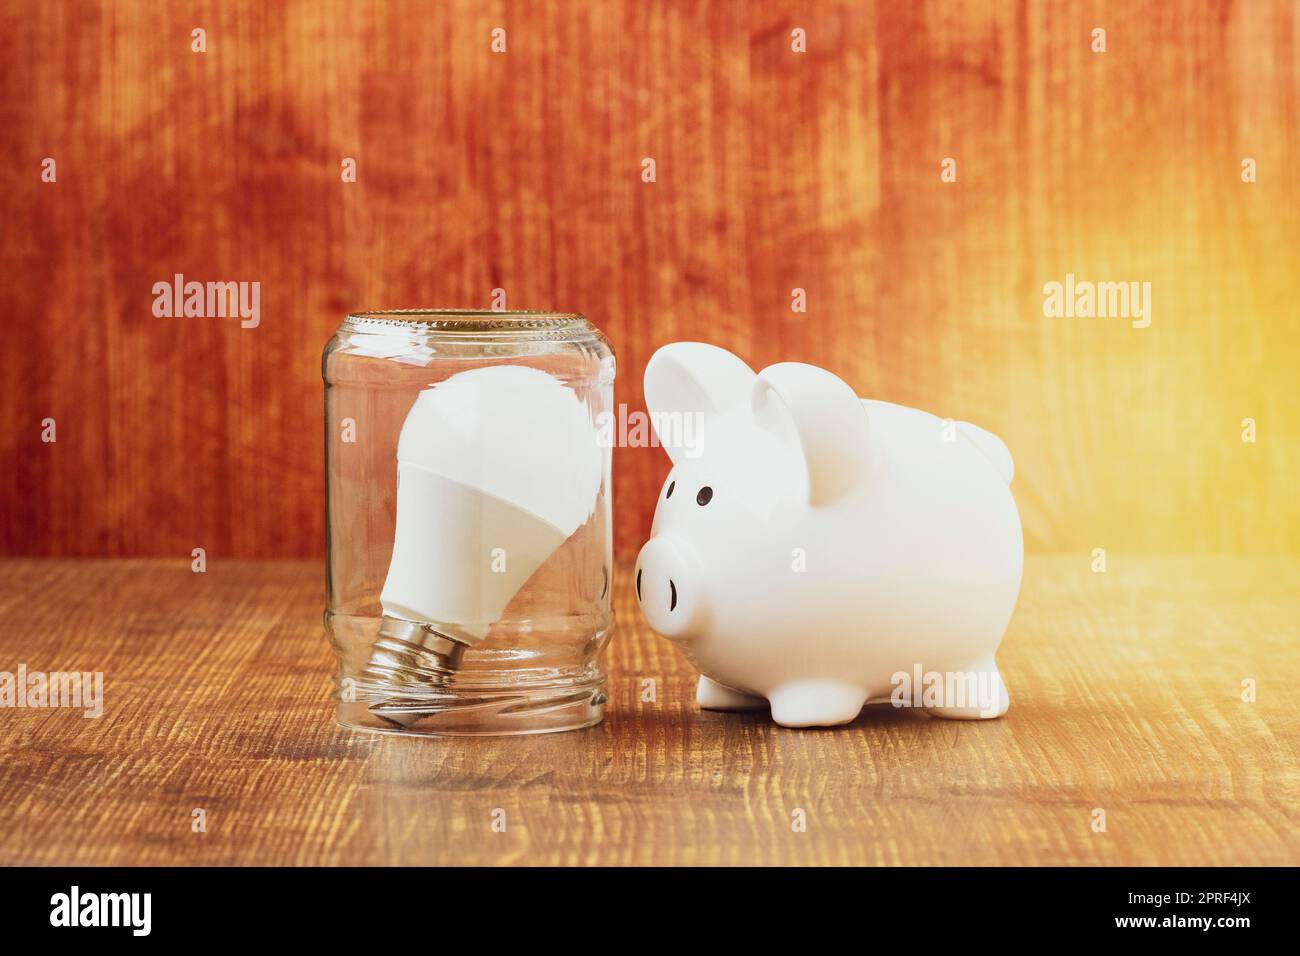 Piggy bank standing next to light bulb inside glass jar Stock Photo